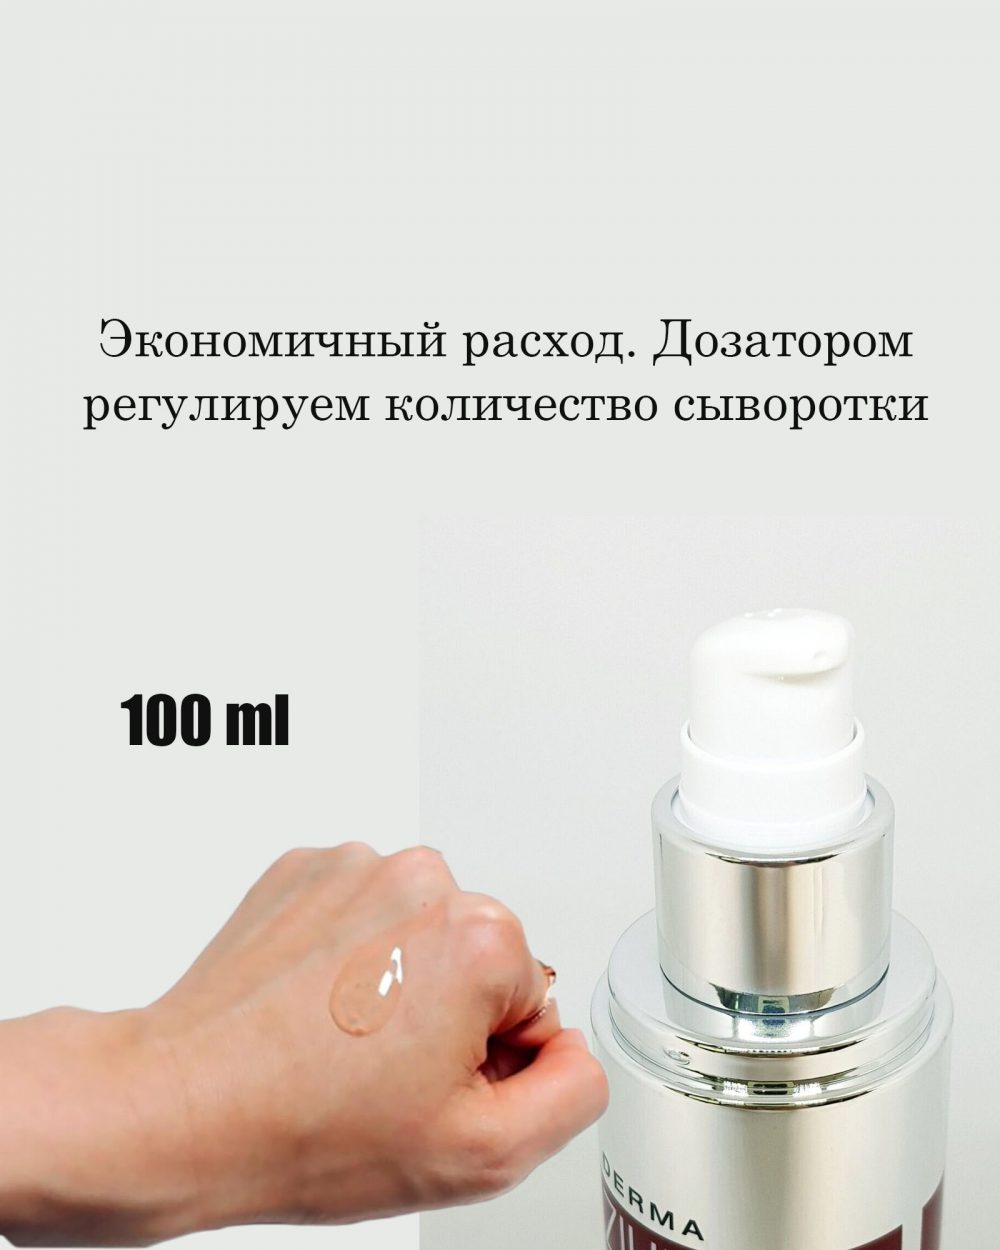 Антиоксидантная лифтинг-ампула с ботулином и пептидами Meditime Botalinum Derma Zium Ampoule Serum (100 ml)